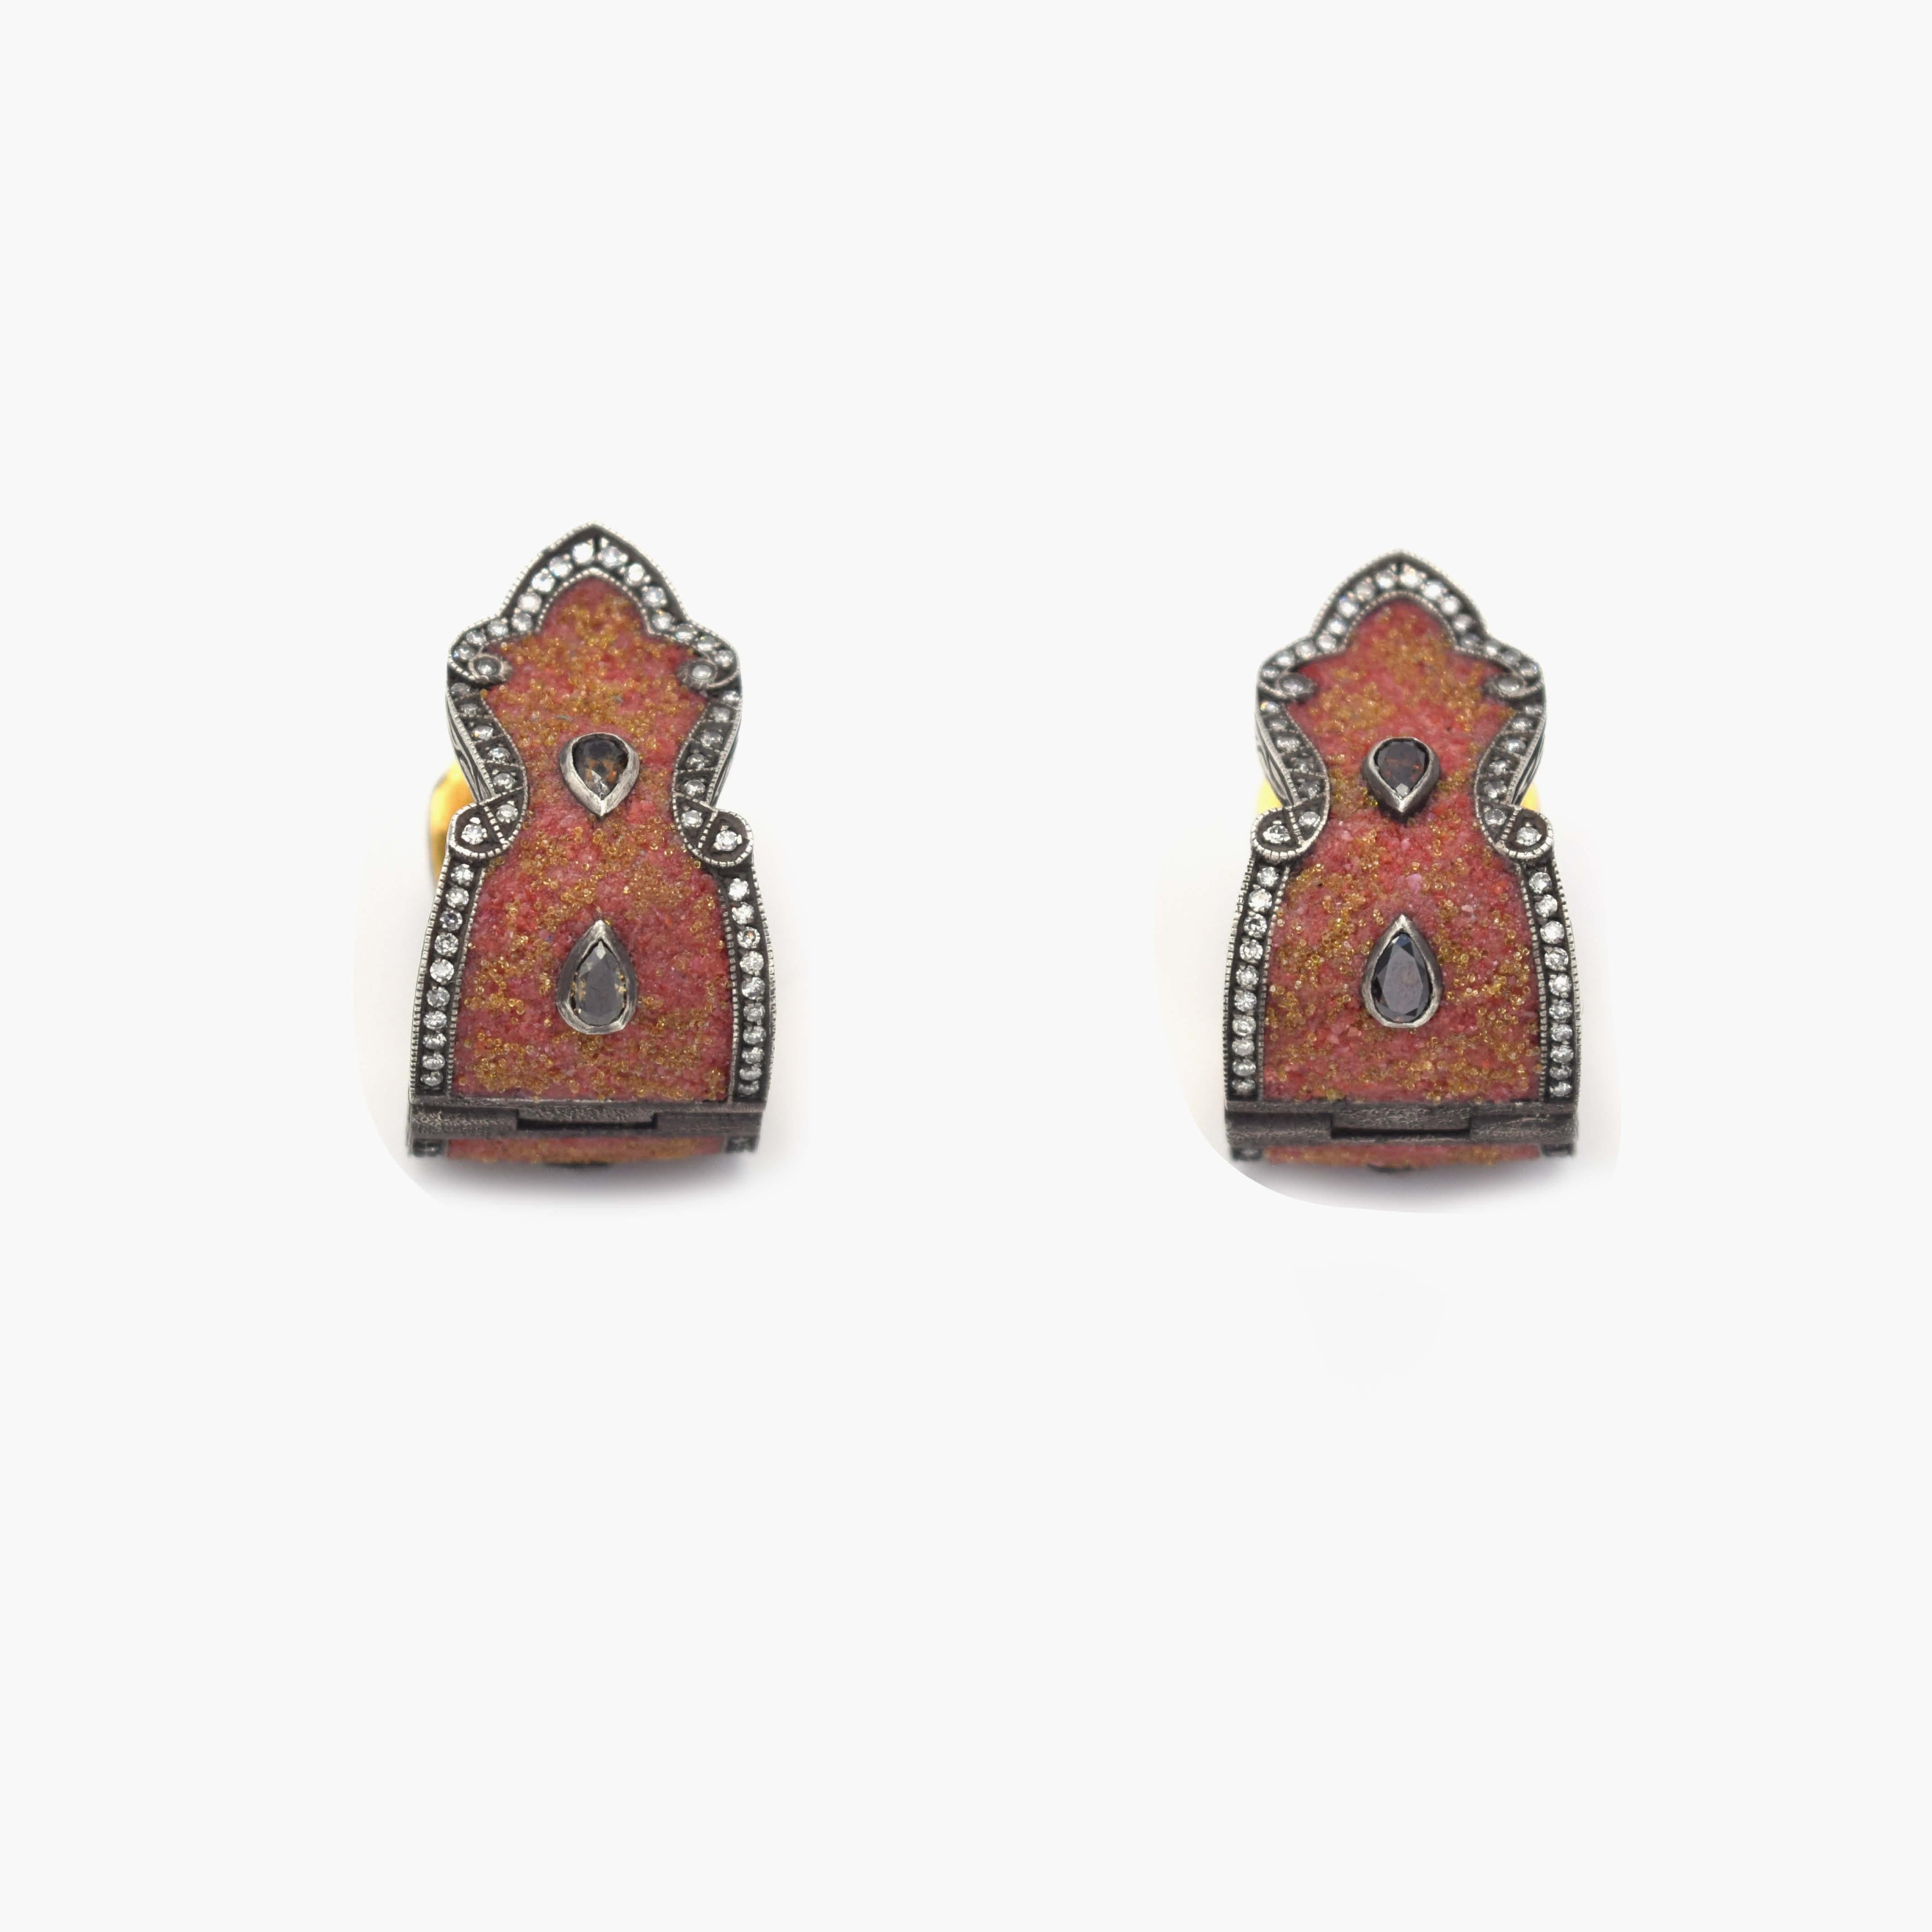 Byzantine Sevan Biçakçi Carnelian and Diamonds Micro Mosaic Earrings in 24K Gold For Sale